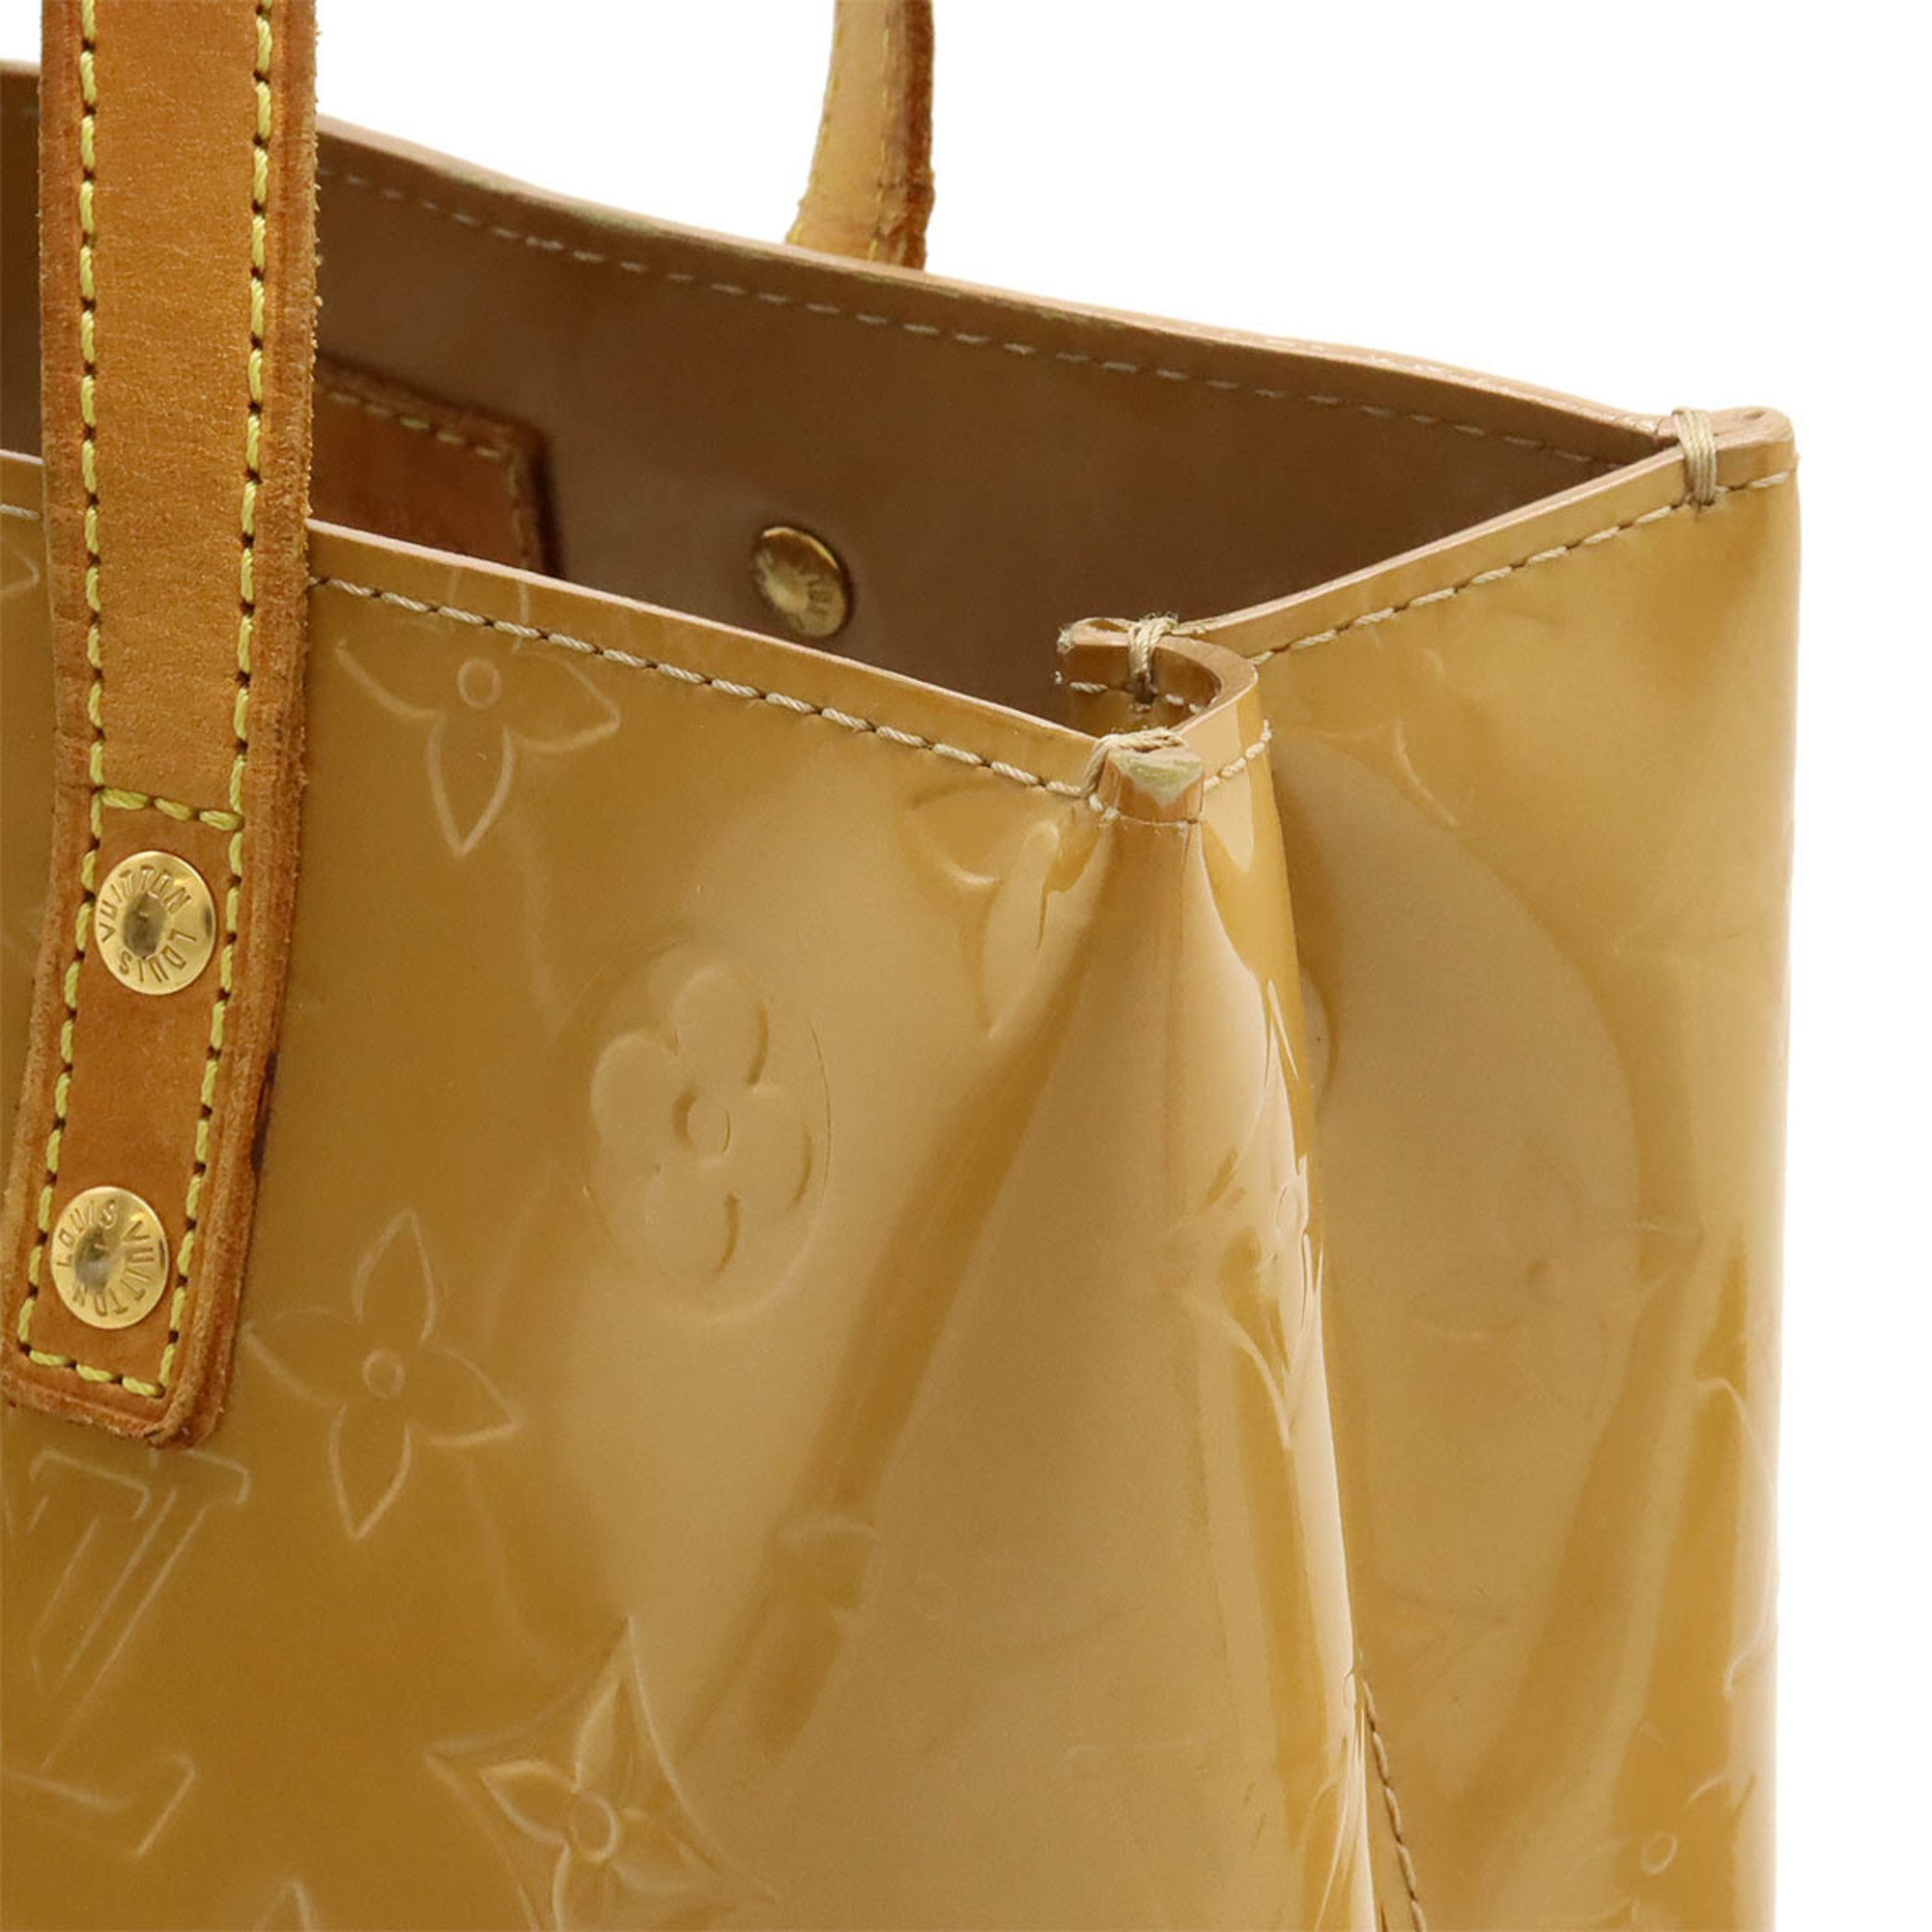 LOUIS VUITTON Louis Vuitton Monogram Vernis Reed PM Handbag Tote Bag Leather Noisette Beige M91334